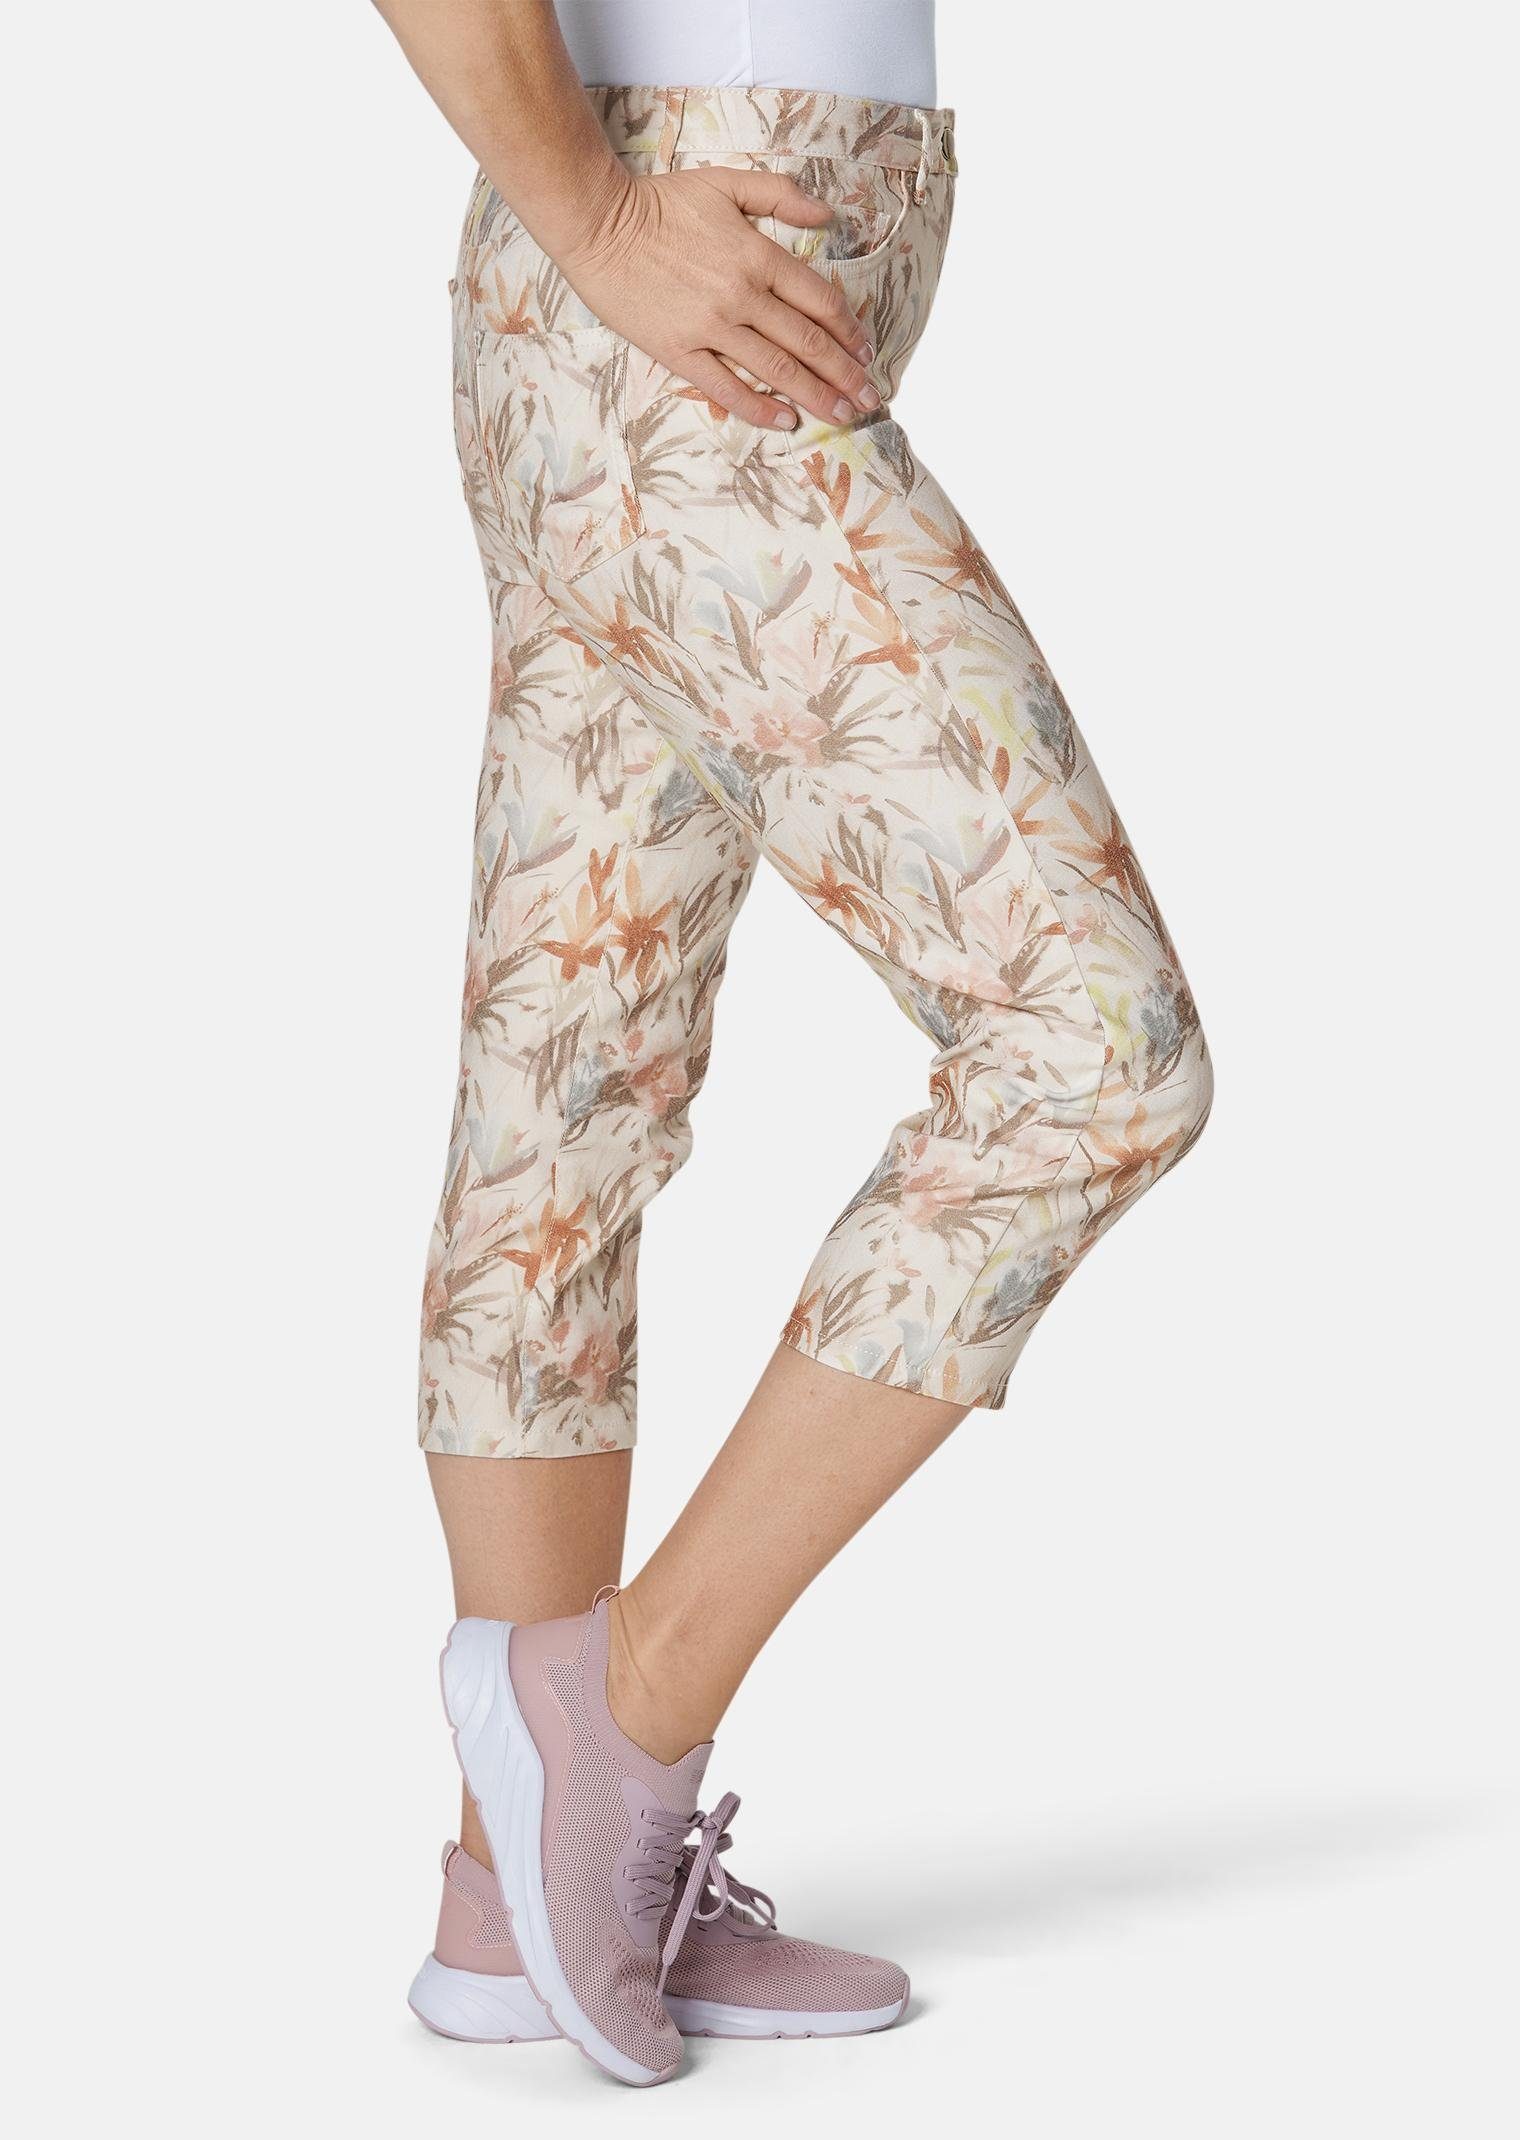 Damen Hosen GOLDNER Stoffhose Druckhose mit ausgefallenem Blumenmuster